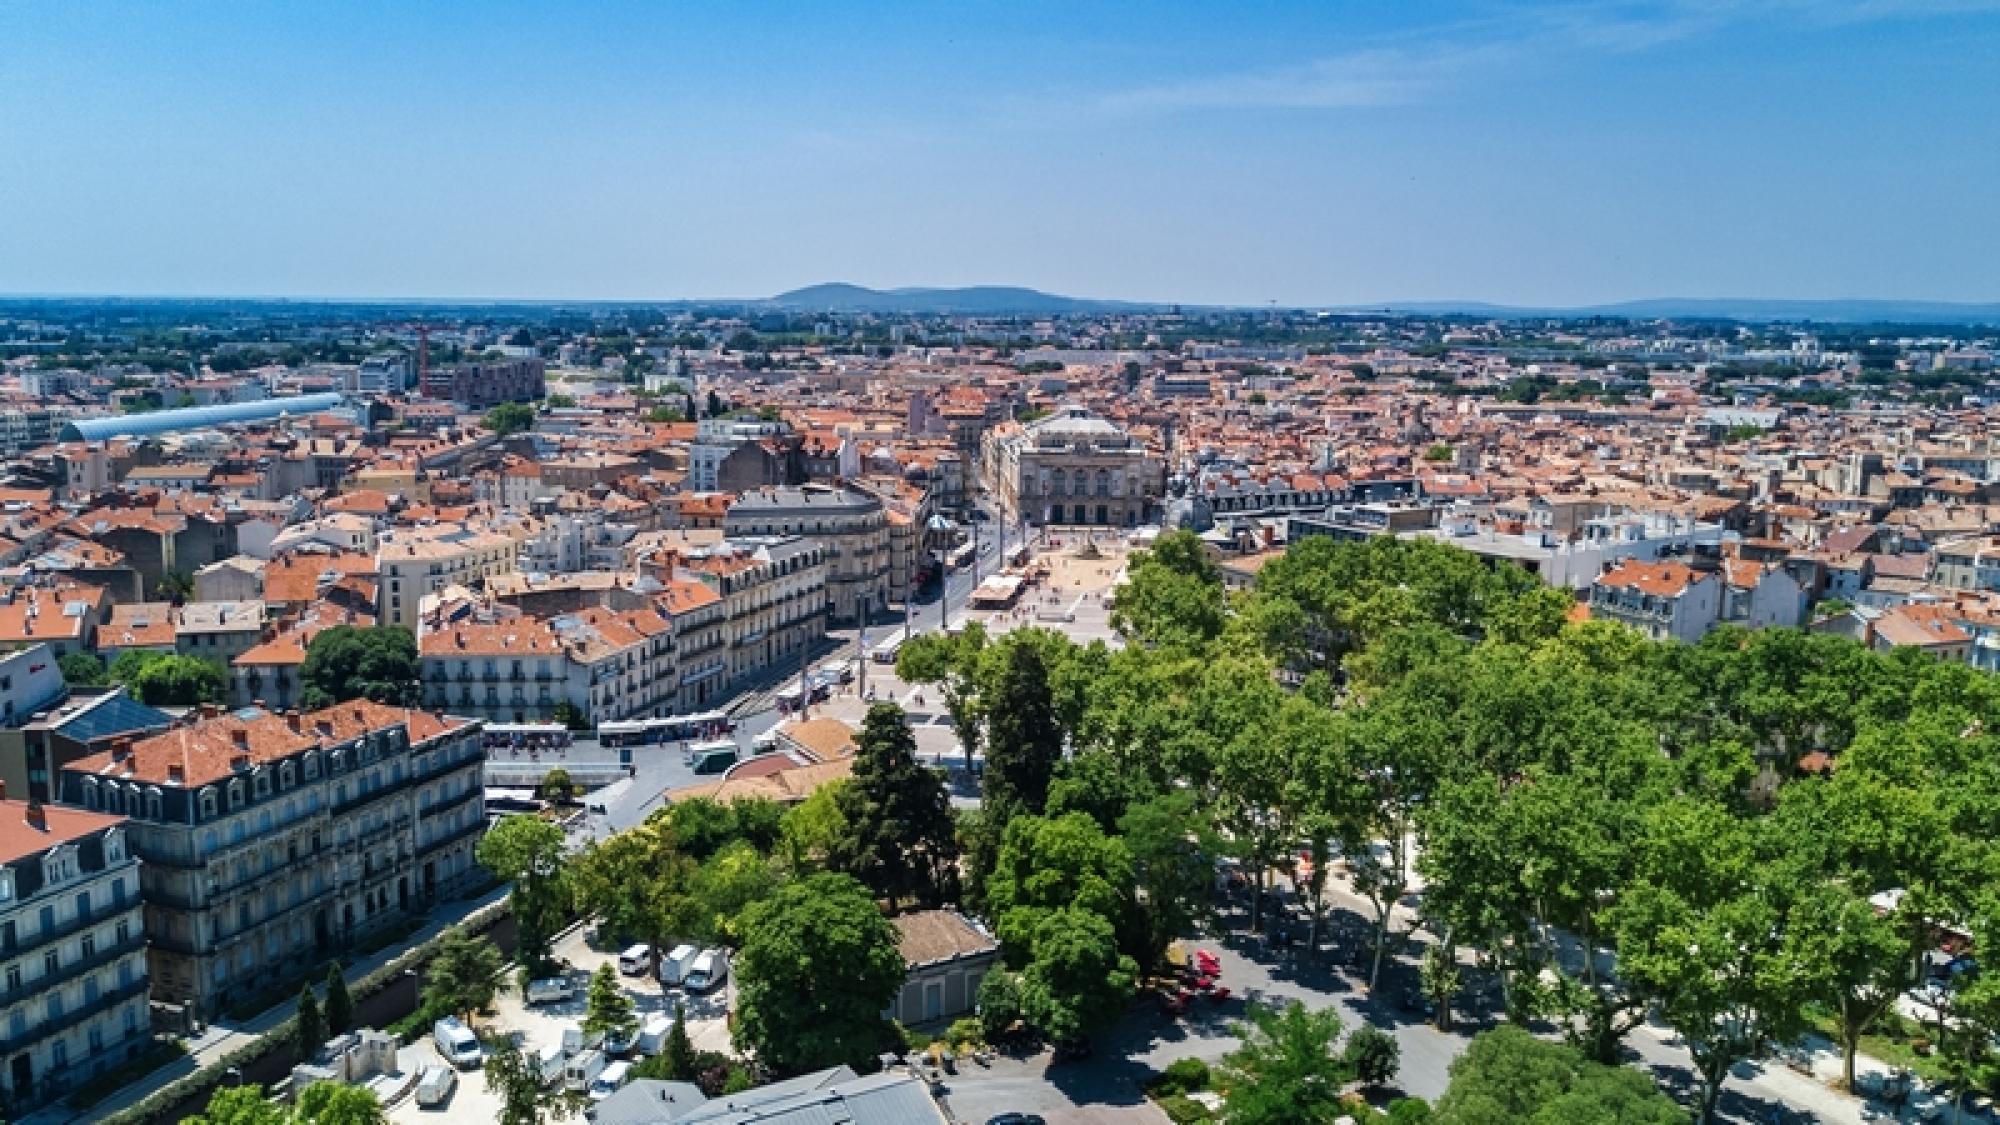 La ville de Montpellier vue du ciel